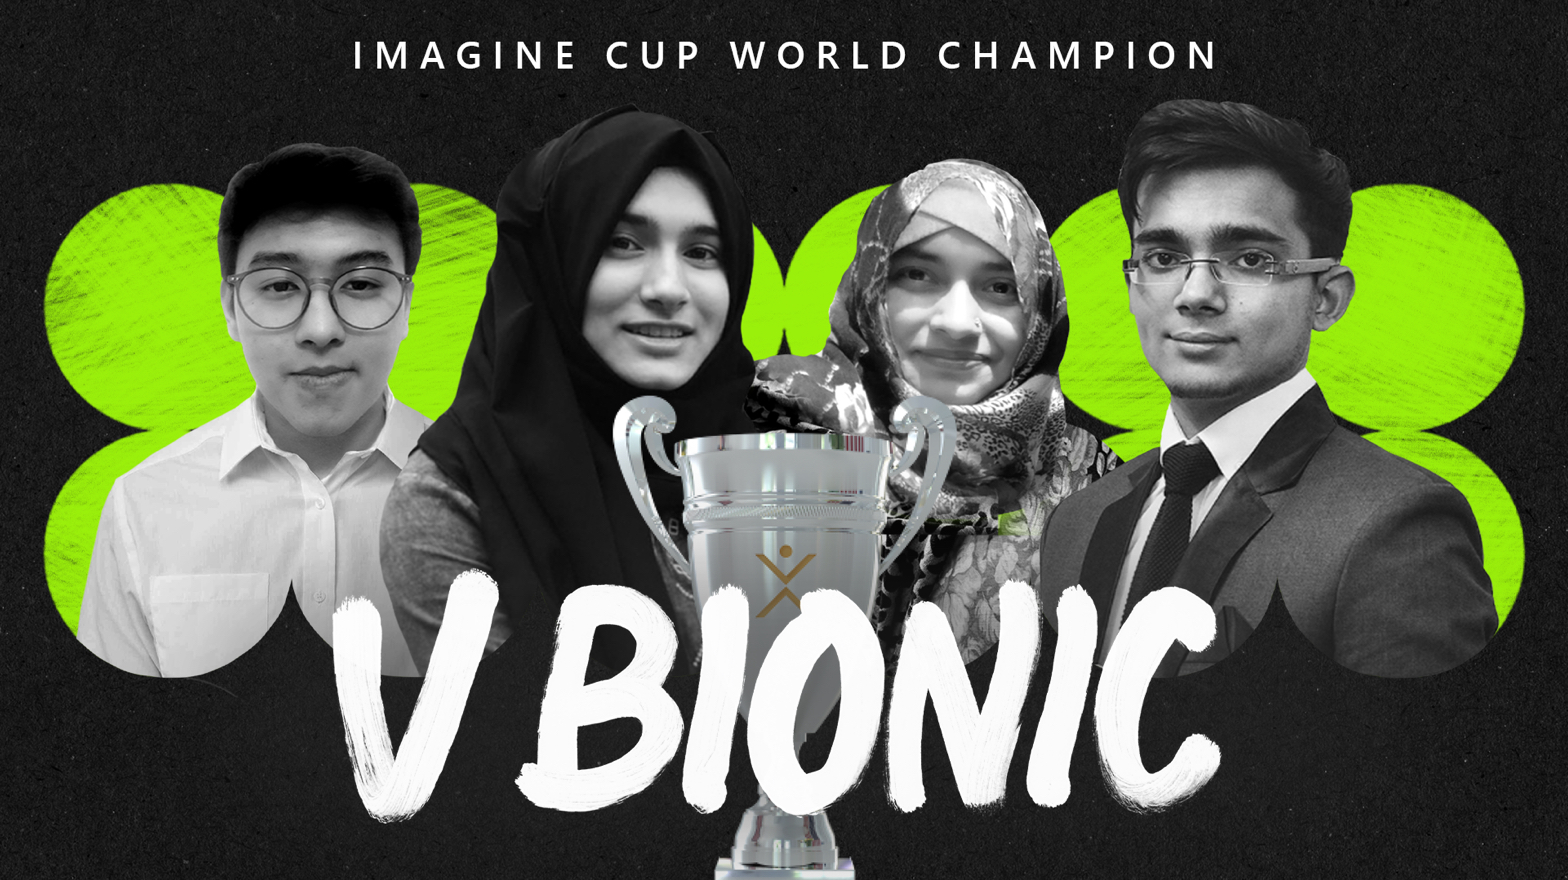 Imagine Cup team V Bionic